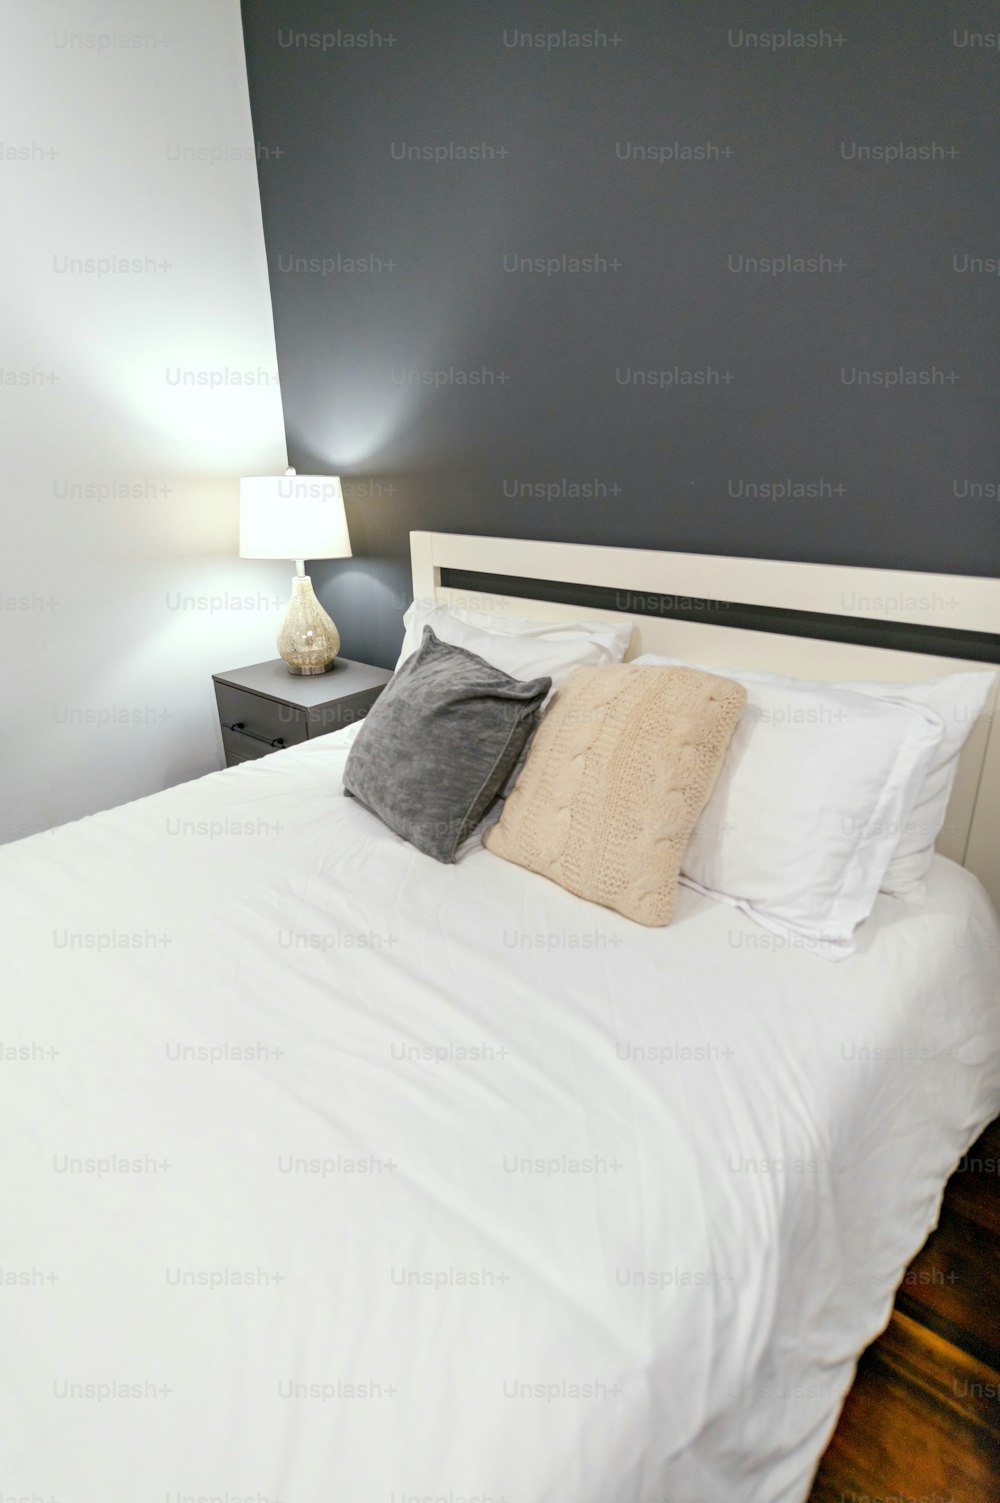 하얀 이불과 두 개의 램프가 있는 침대